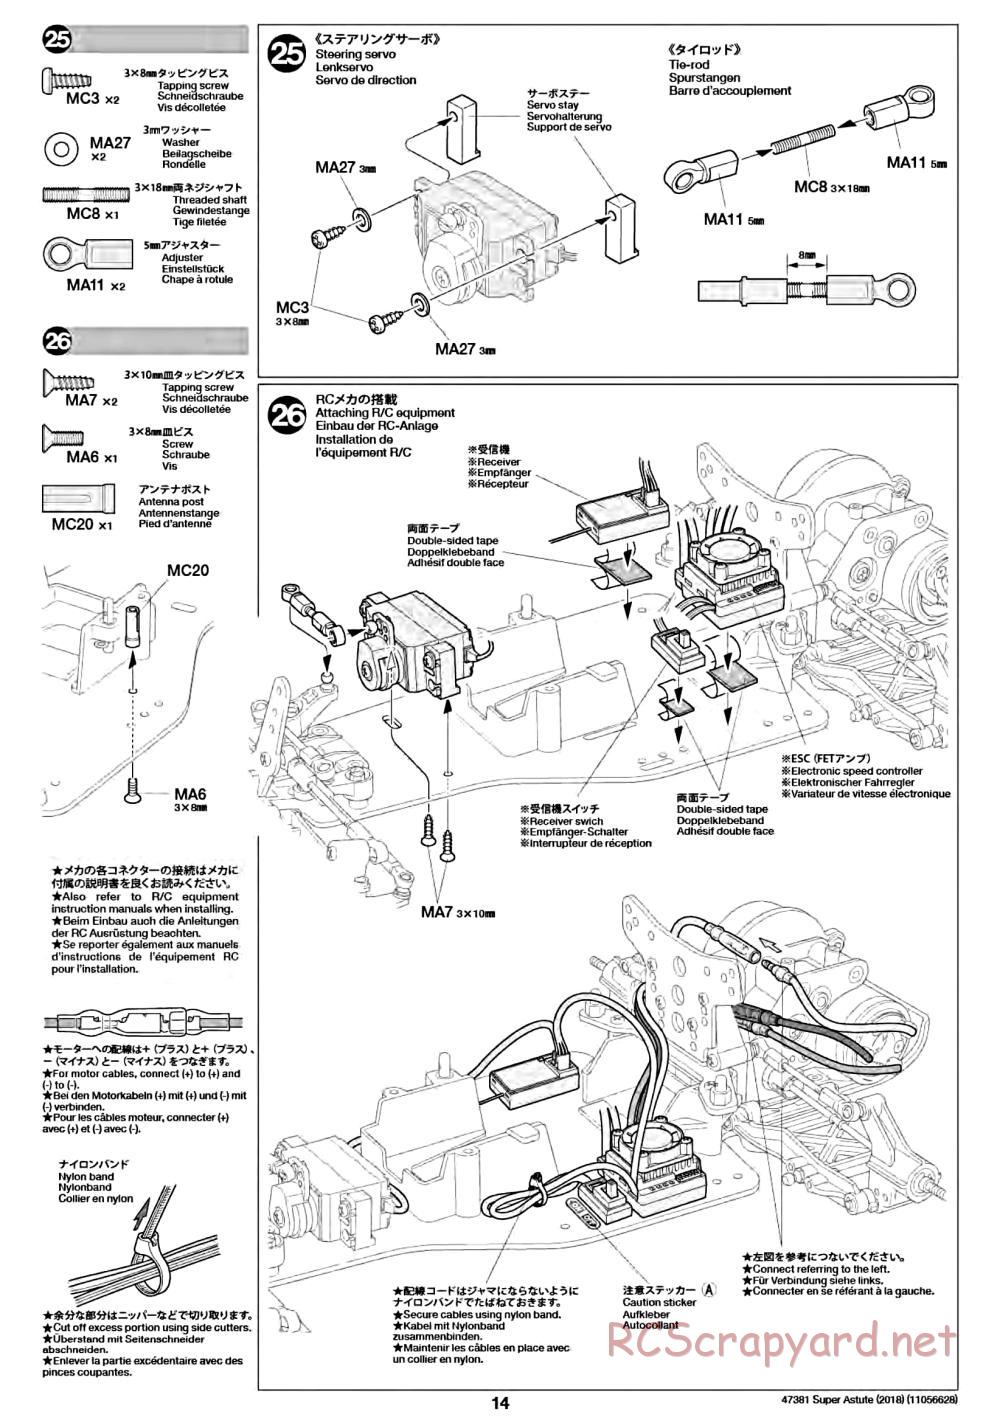 Tamiya - Super Astute (2018) Chassis - Manual - Page 14